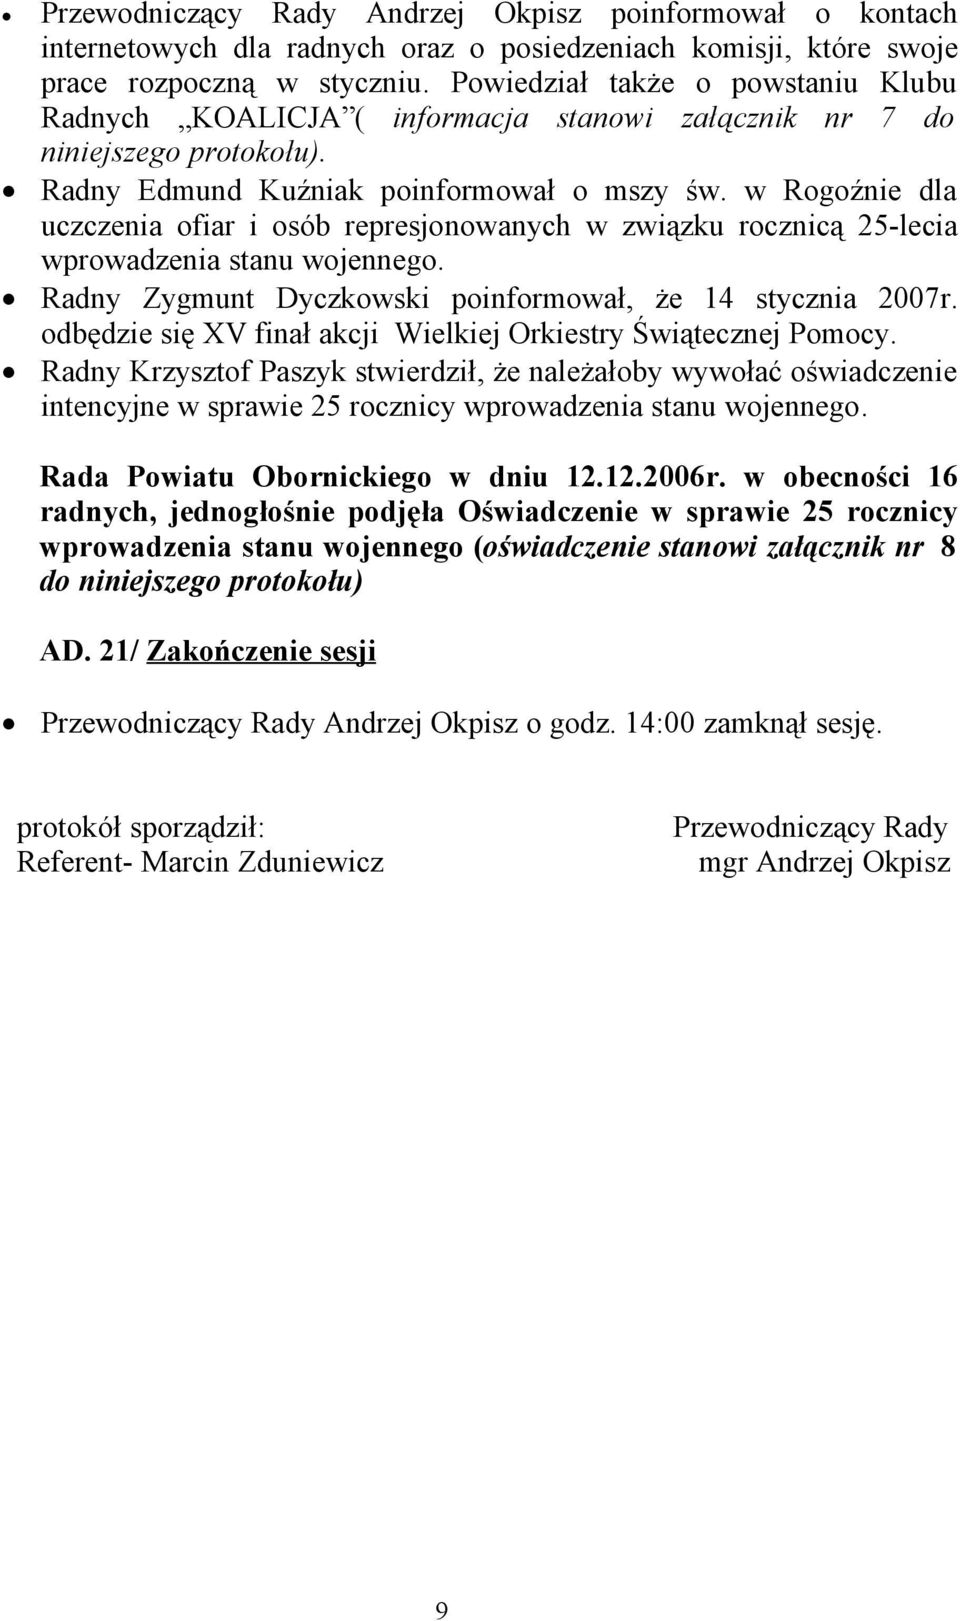 w Rogoźnie dla uczczenia ofiar i osób represjonowanych w związku rocznicą 25-lecia wprowadzenia stanu wojennego. Radny Zygmunt Dyczkowski poinformował, że 14 stycznia 2007r.